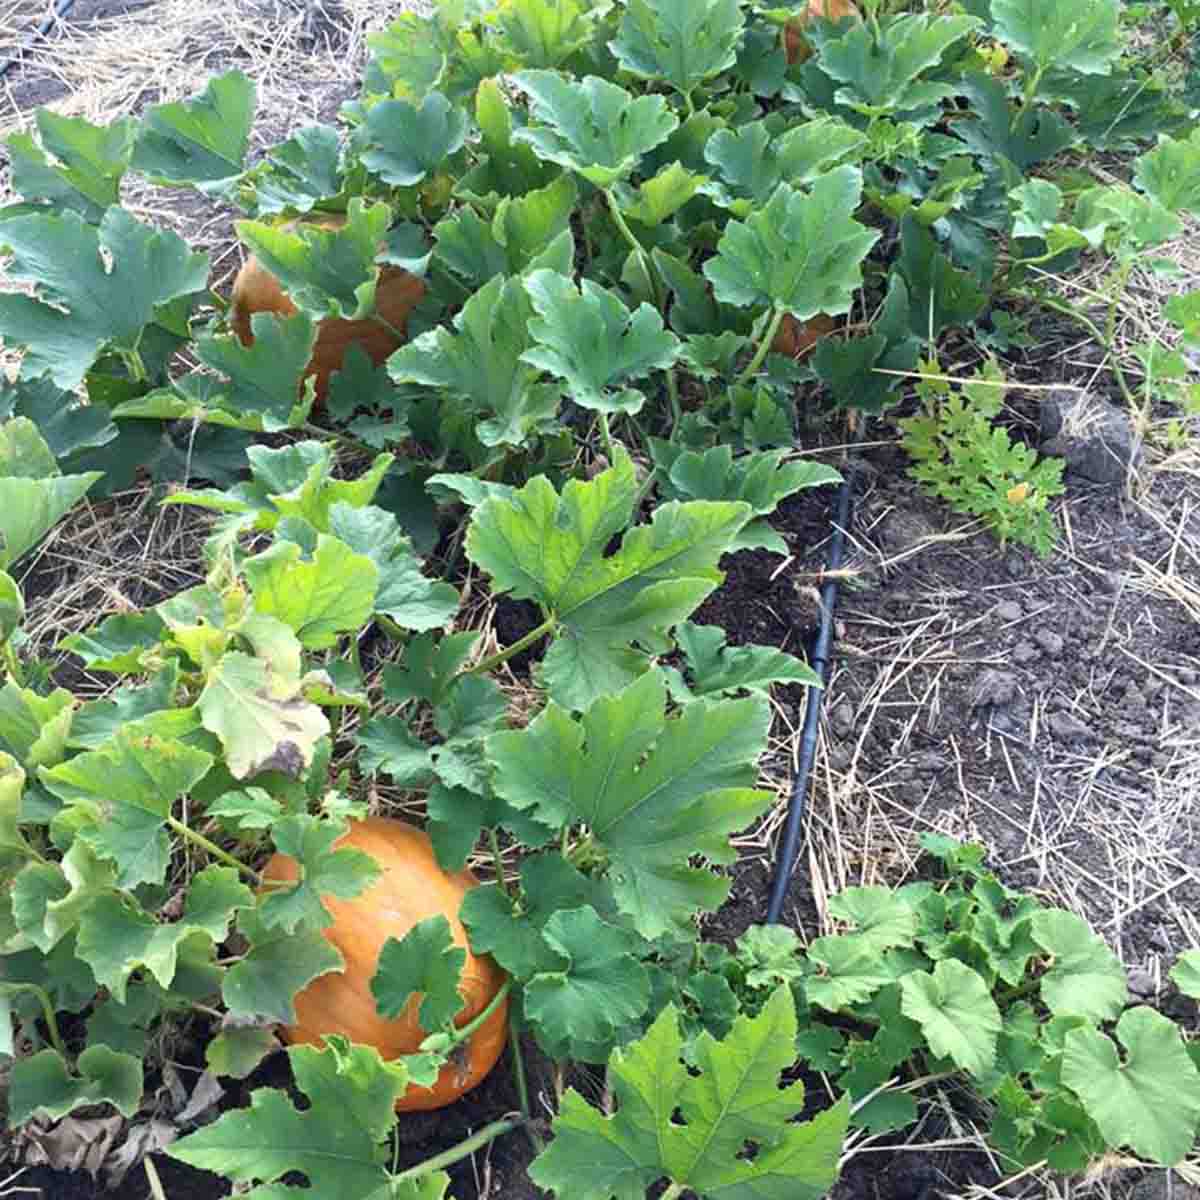 A few pumpkins growing in the garden